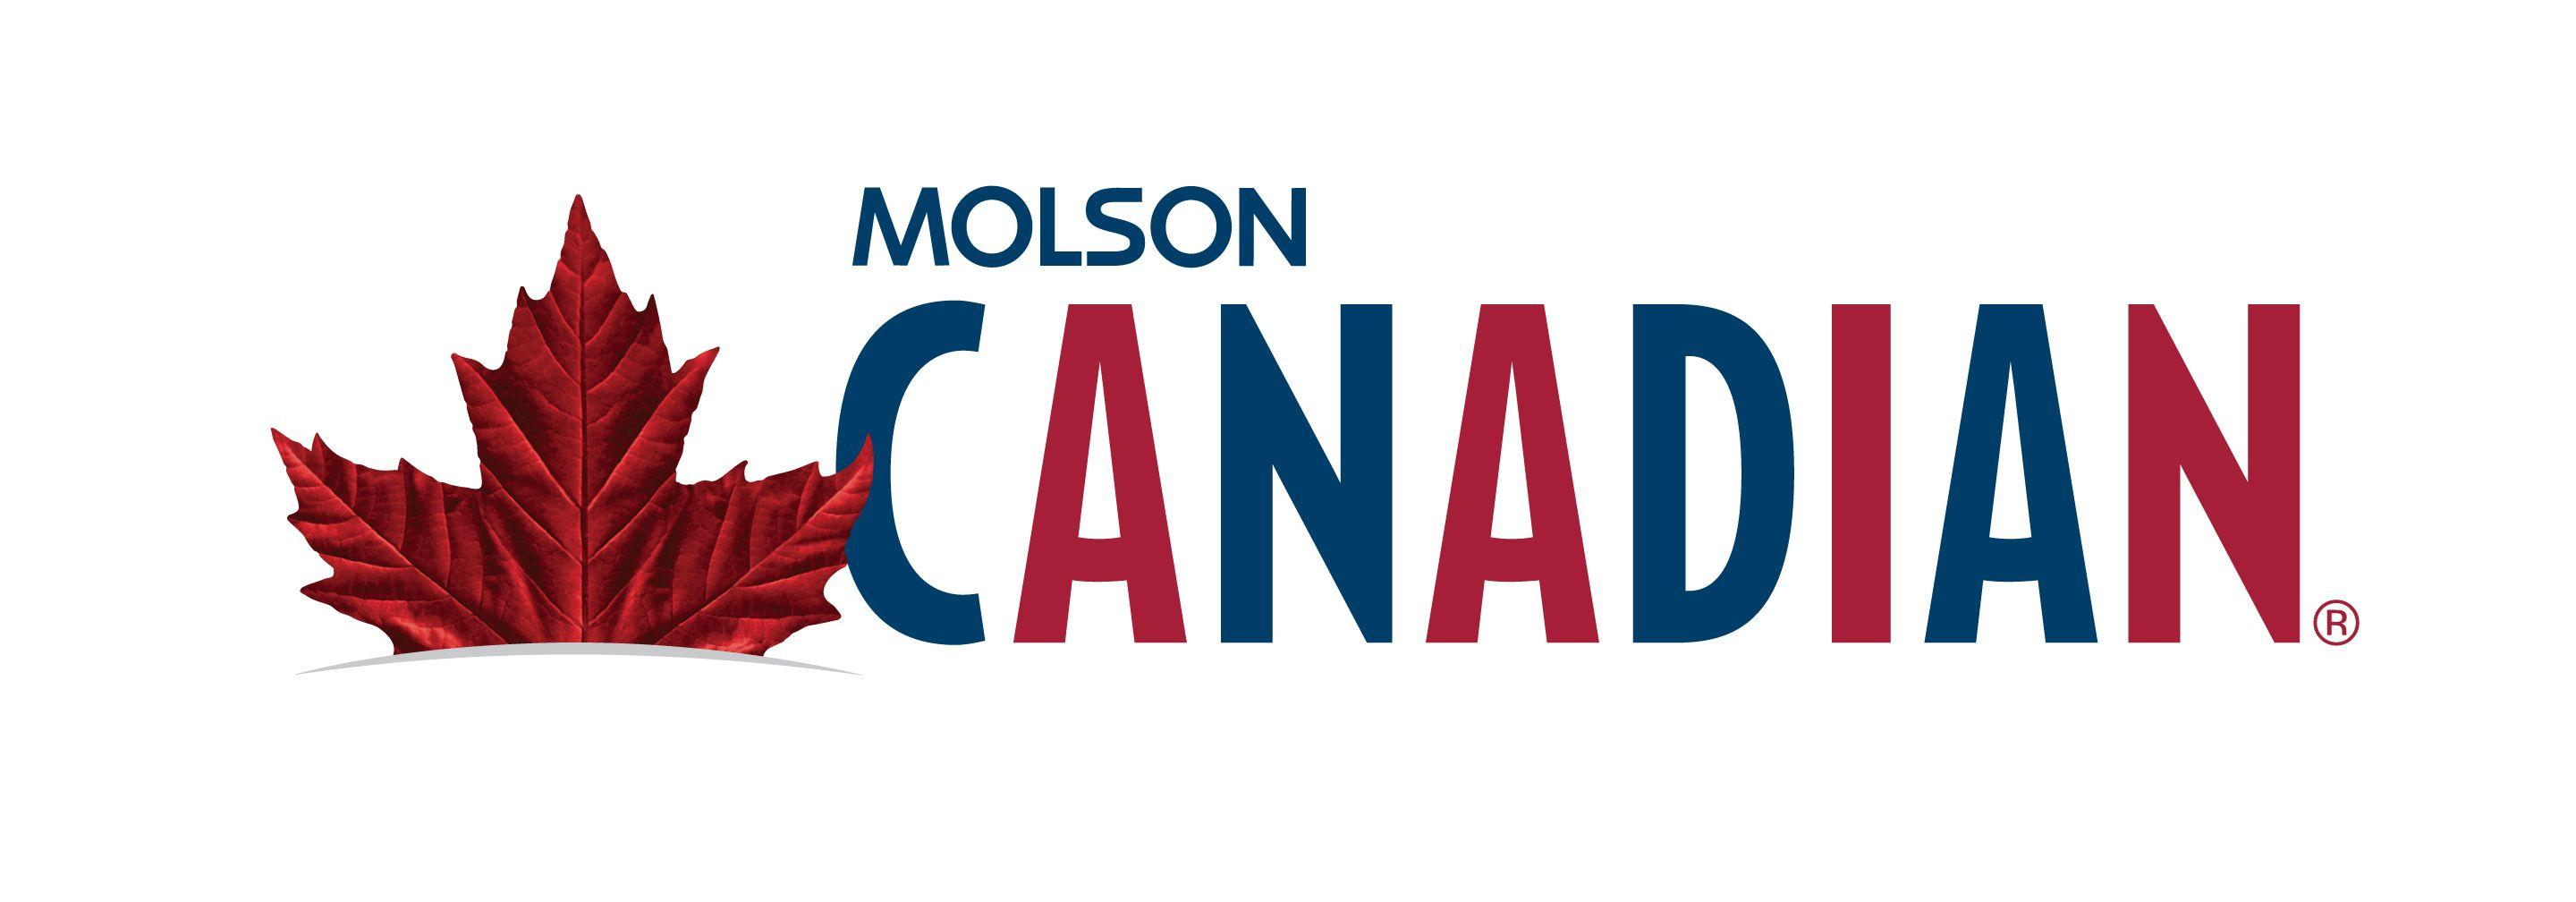 Molson Canadian Logo - Molson canadian maple leaf Logos